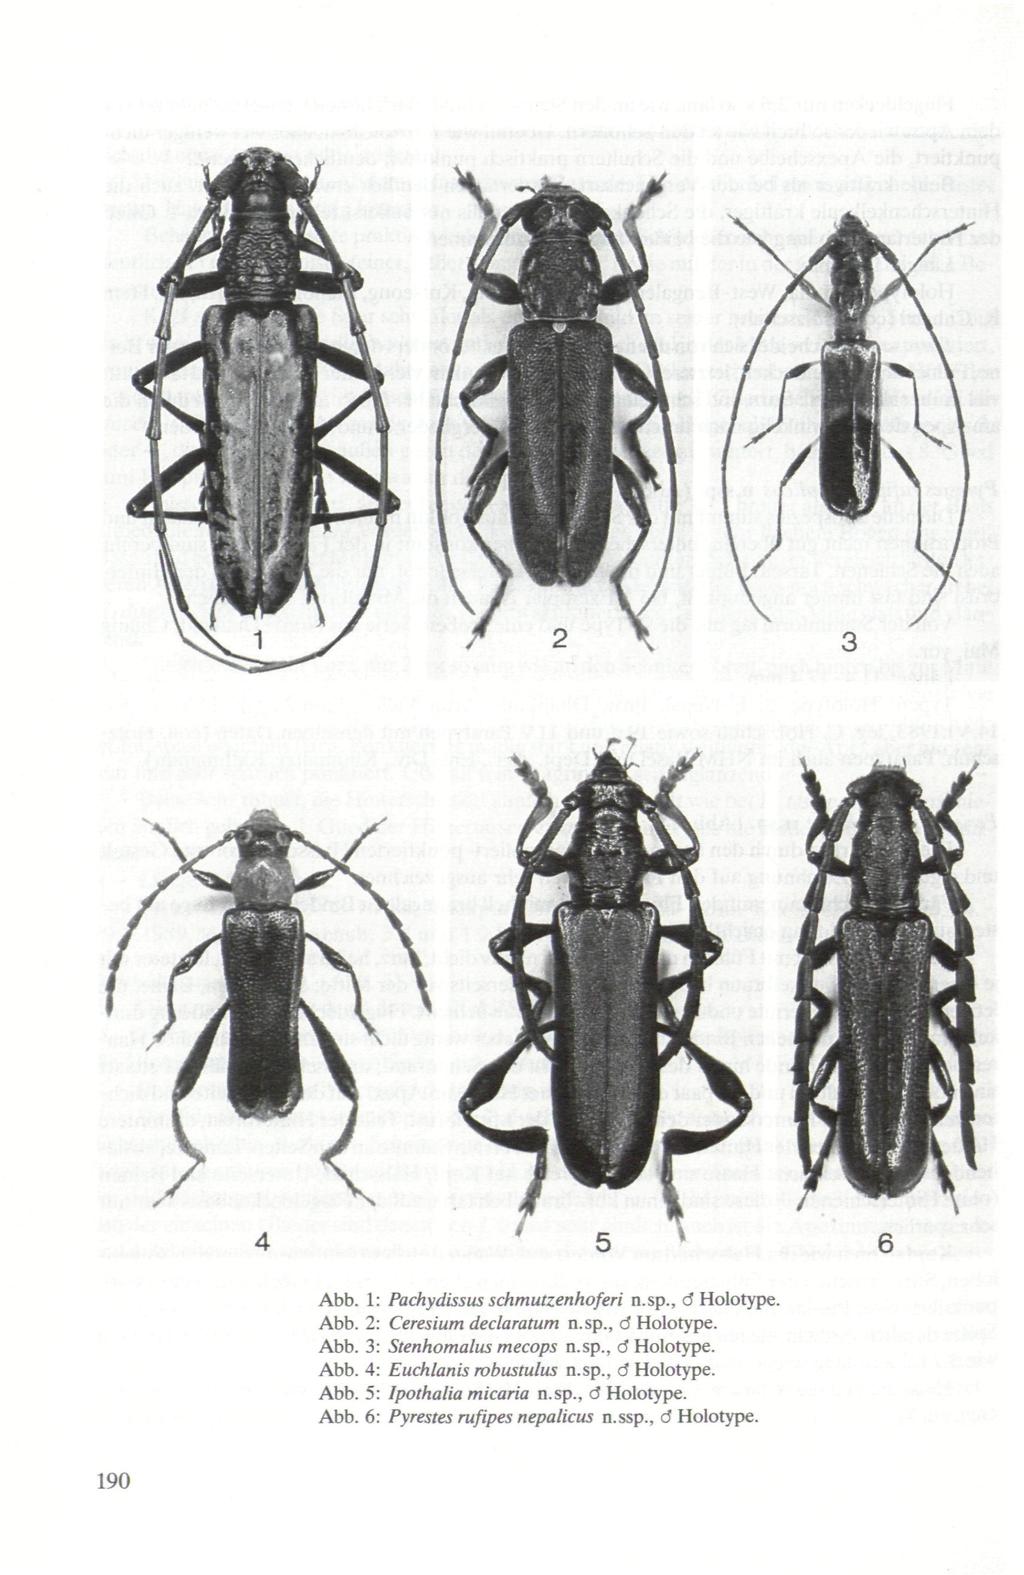 Abb. 1: Pachydissus schmutzenhoferi n.sp., d Holotype. Abb. 2: Ceresium declaratum n.sp., d Holotype. Abb. 3: Stenhomalus mecops n.sp., d Holotype. Abb. 4: Euchlanis mbustulus n.